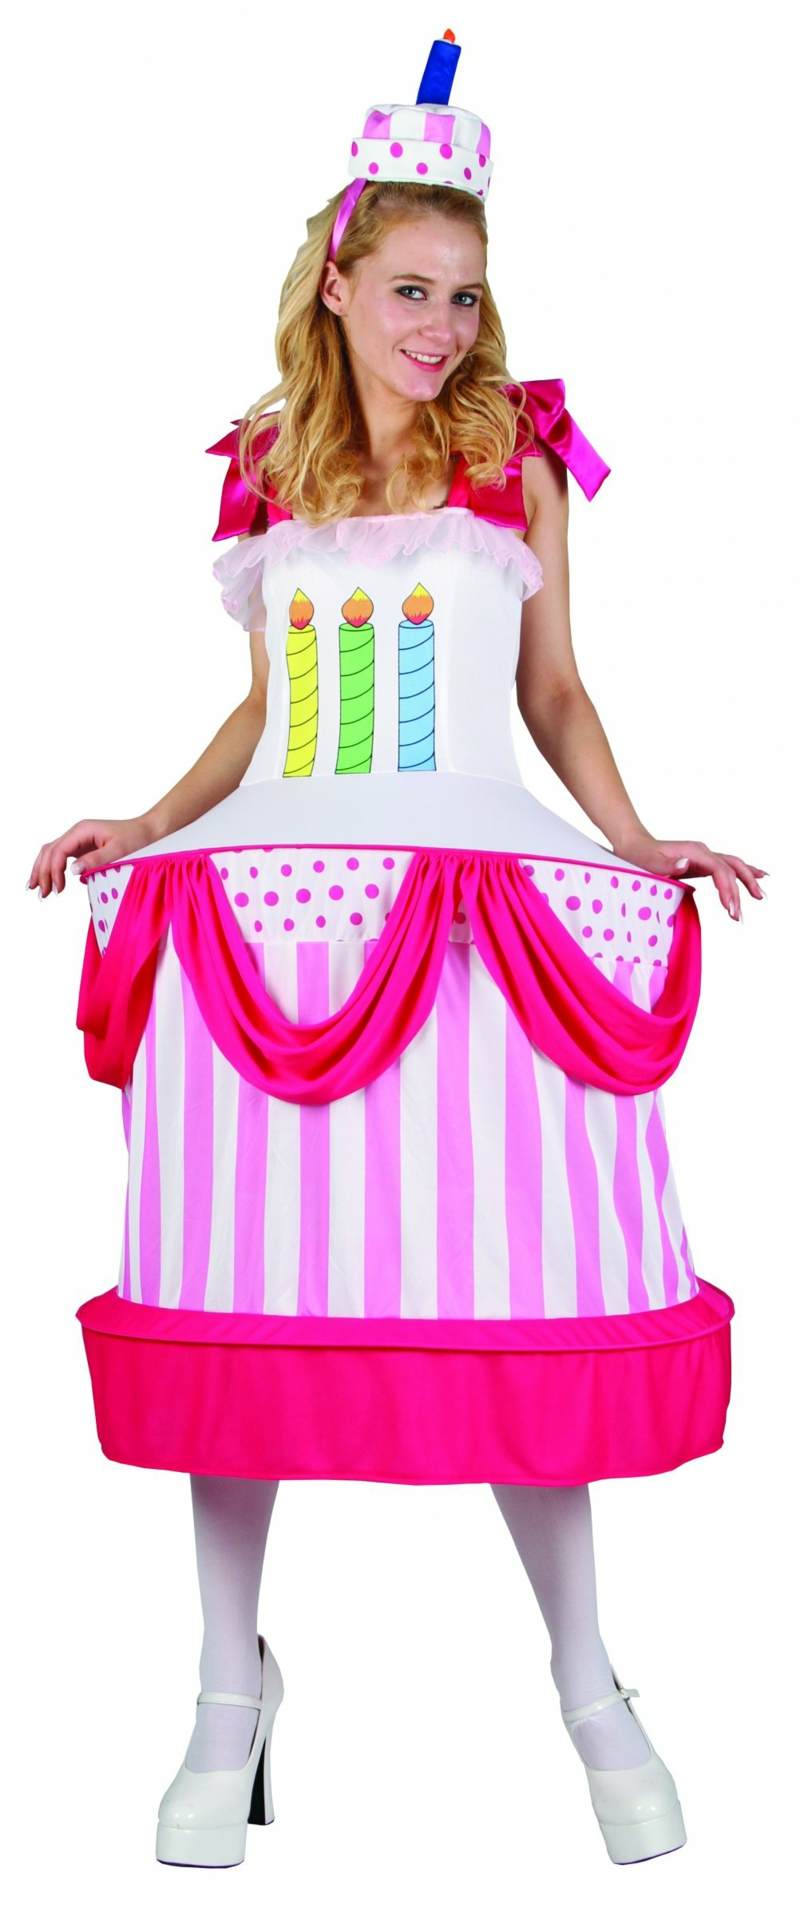 billiga karnevalskostymer tårta förklädda rosa damljus